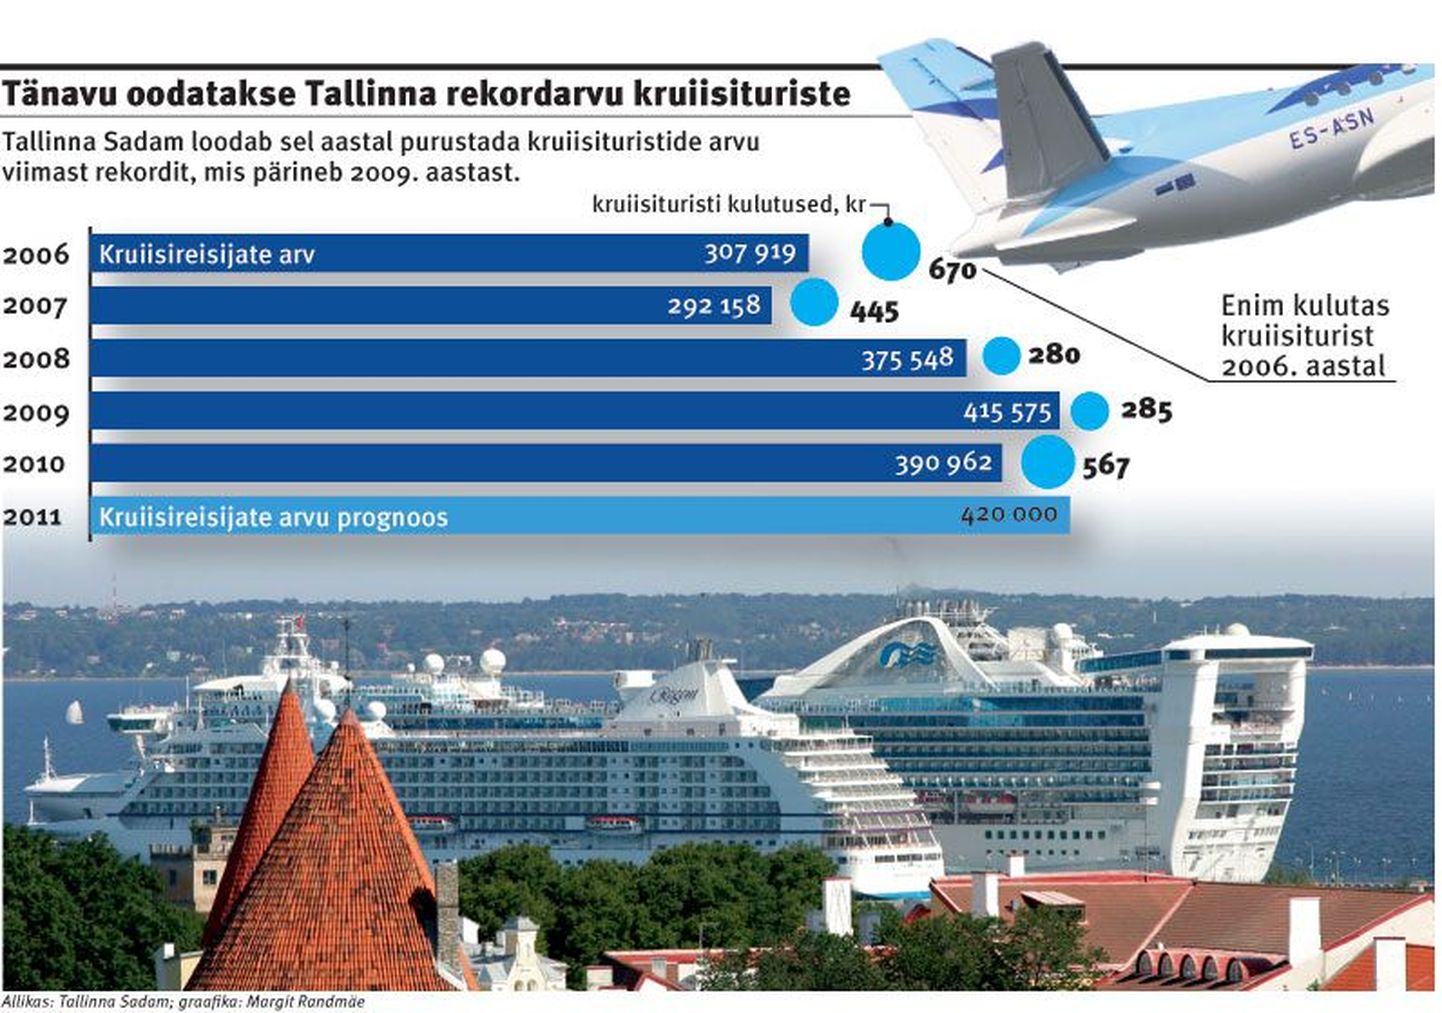 Tänavu oodatakse Tallinna rekordarvu kruiisituriste.